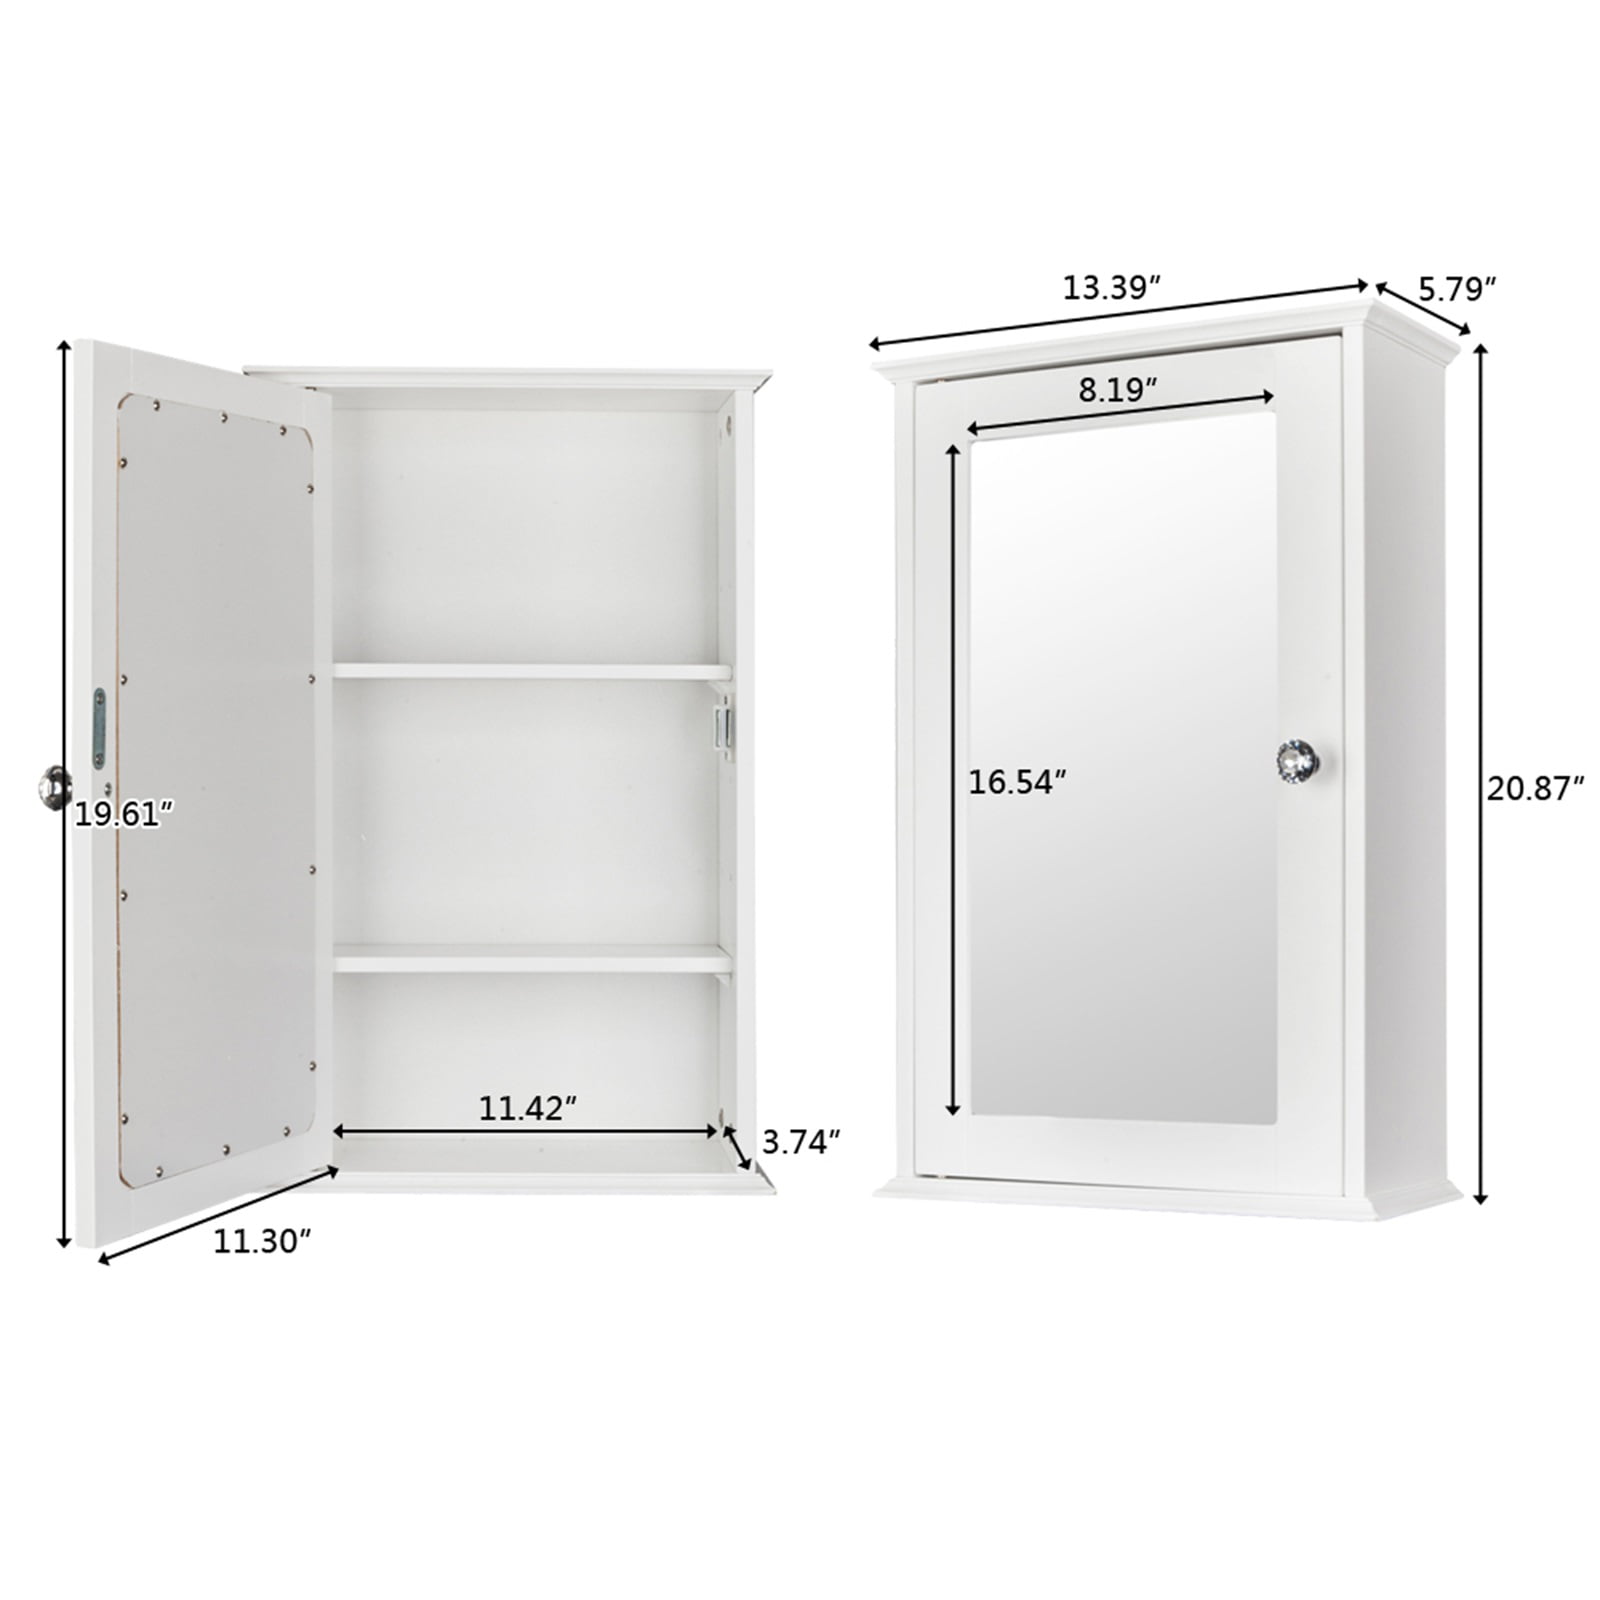 Vienna white single door mirror cabinet